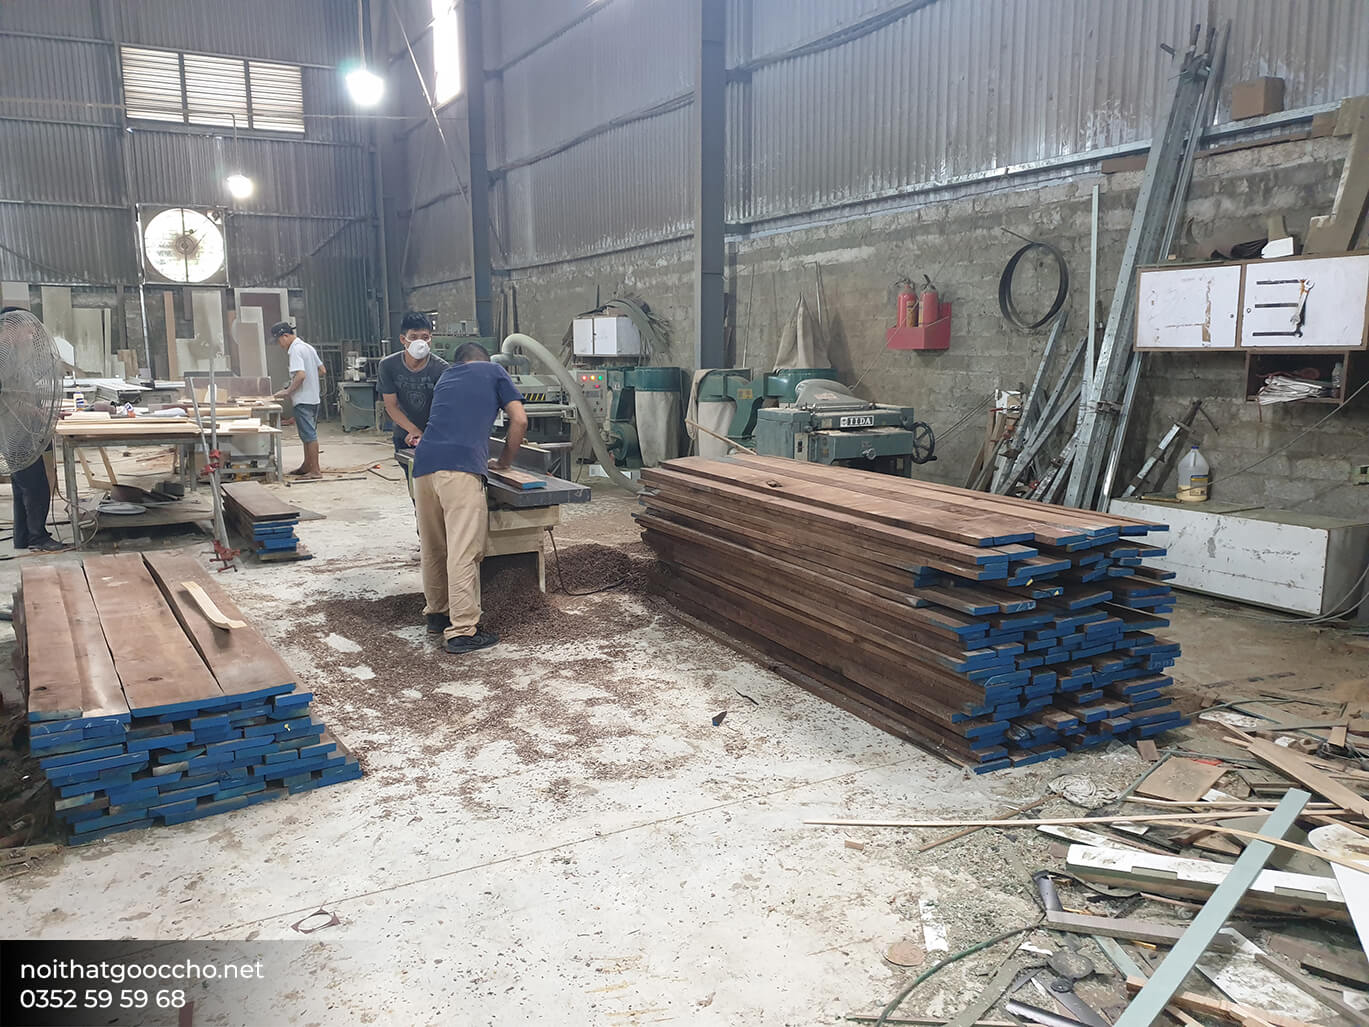 Nội thất gỗ công nghiệp cao cấp và giá rẻ là gì?